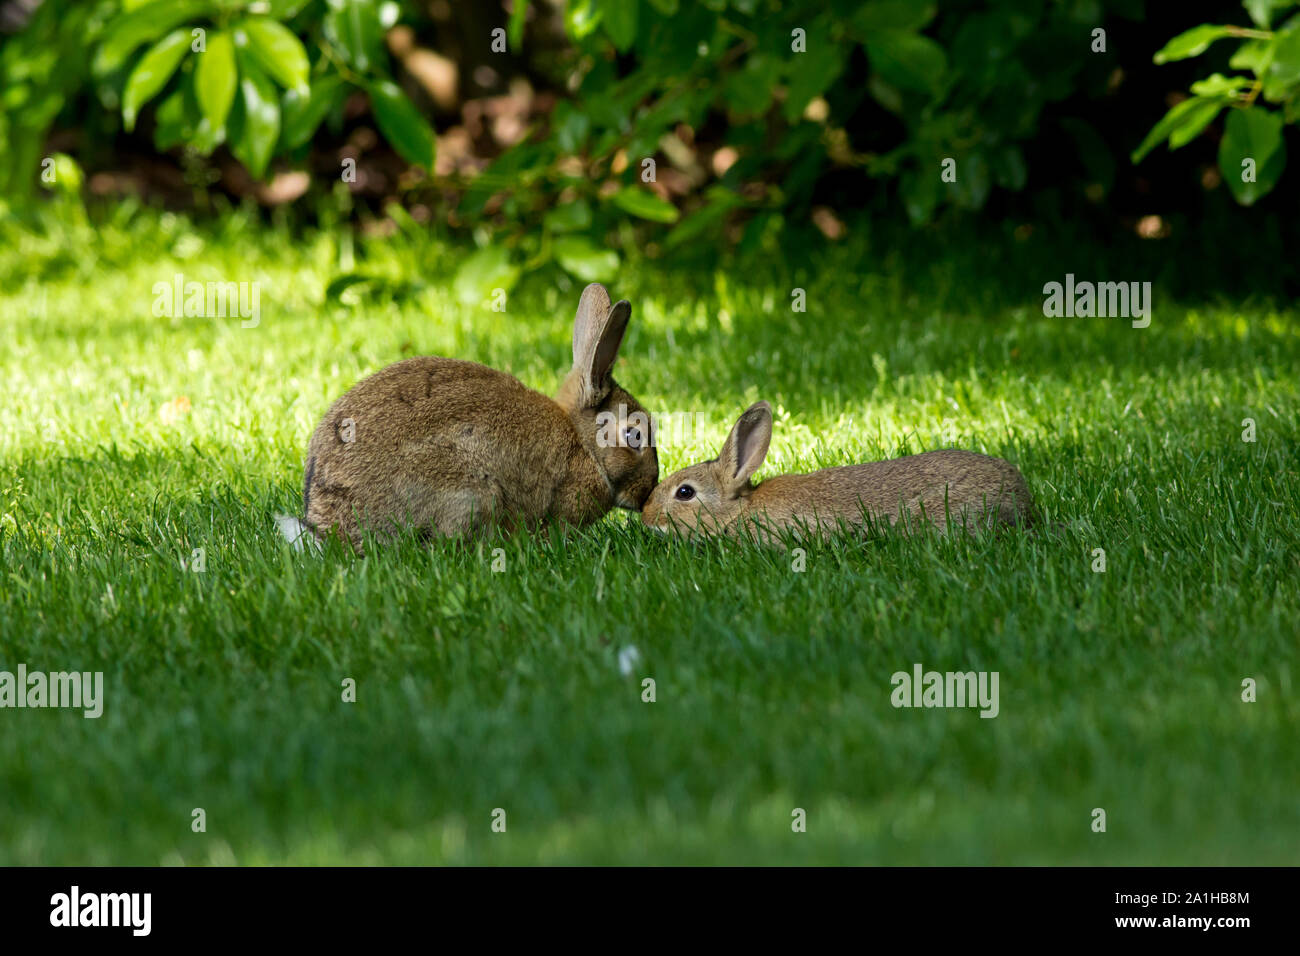 La madre y el bebé lindo bunny conejos besar en pasto verde fresco en una agradable mañana de primavera con mucho sol rodeado por verdes hojas frescas. Foto de stock